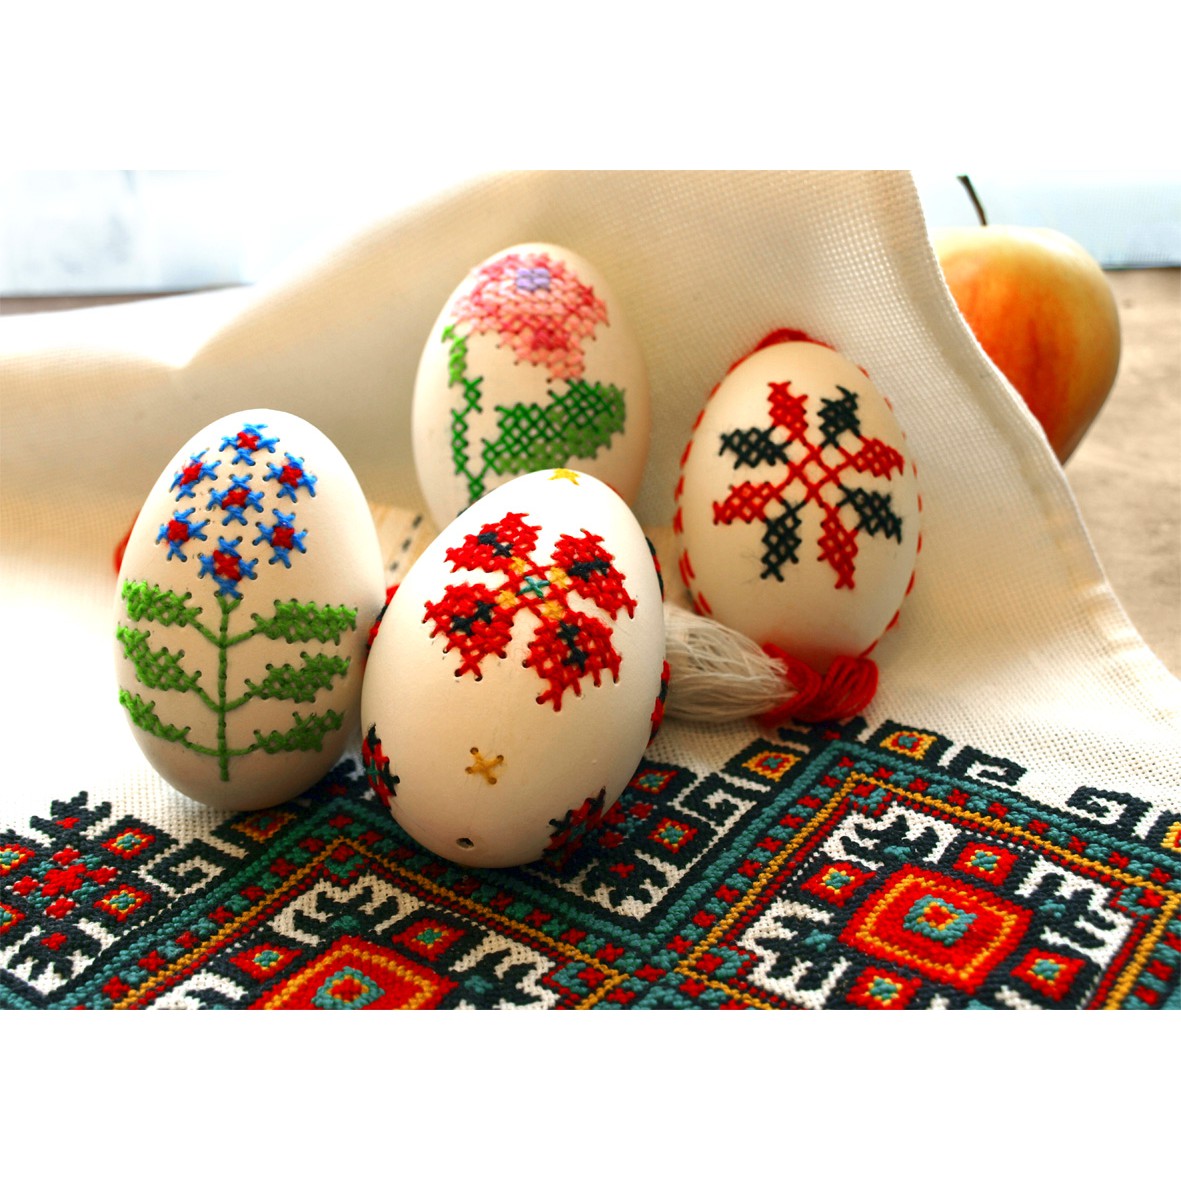 Fújt libatojás héj 10 db húsvéti tojás díszítéshez omegamix.hu